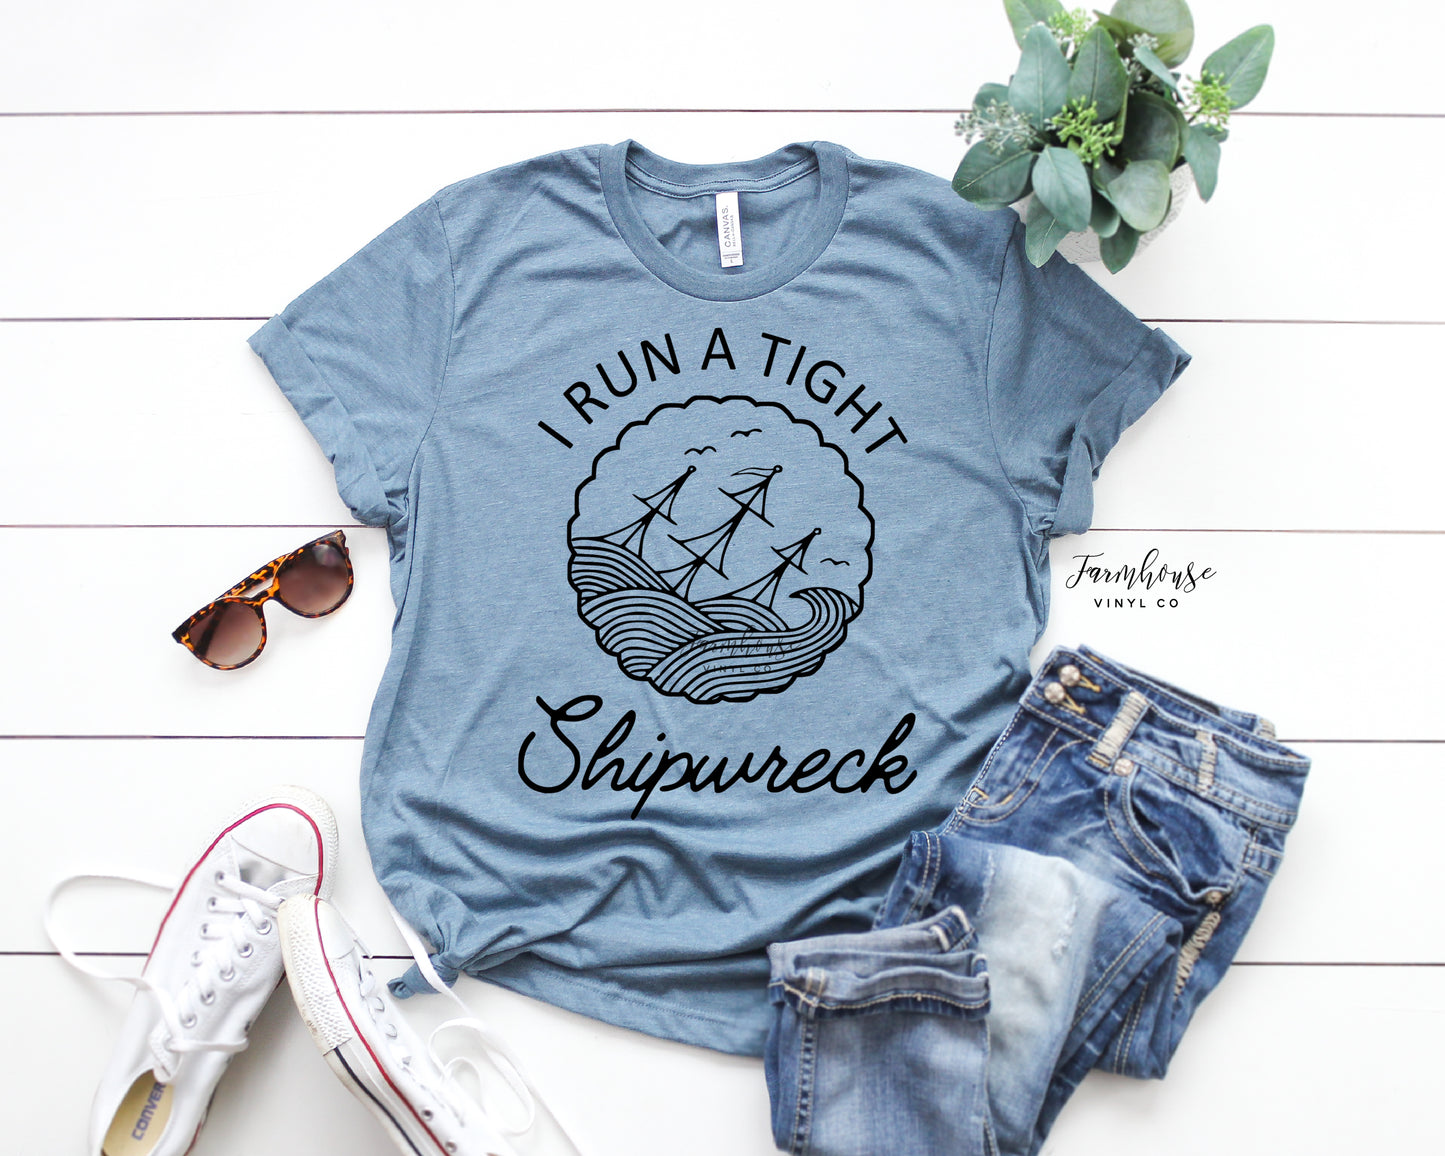 I Run A Tight Shipwreck Shirt - Farmhouse Vinyl Co